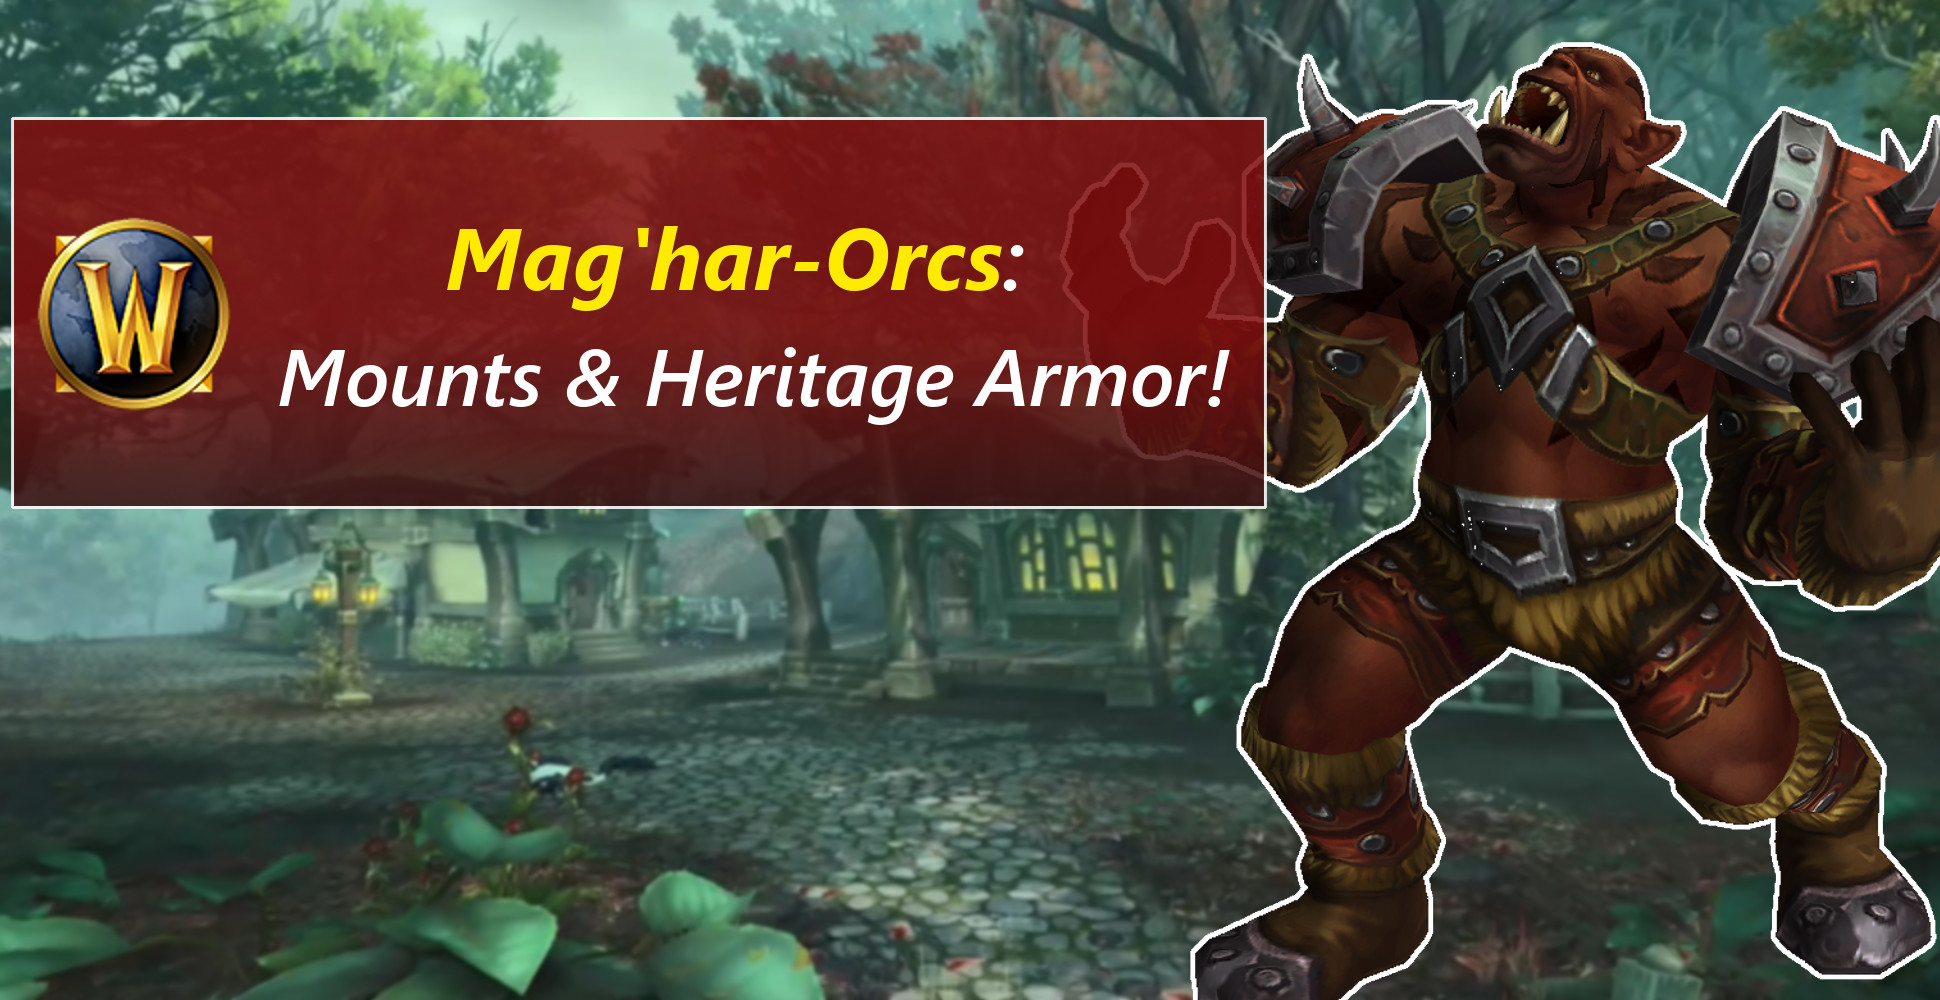 Das Verbündete Volk der Mag’har-Orcs in WoW kommt!